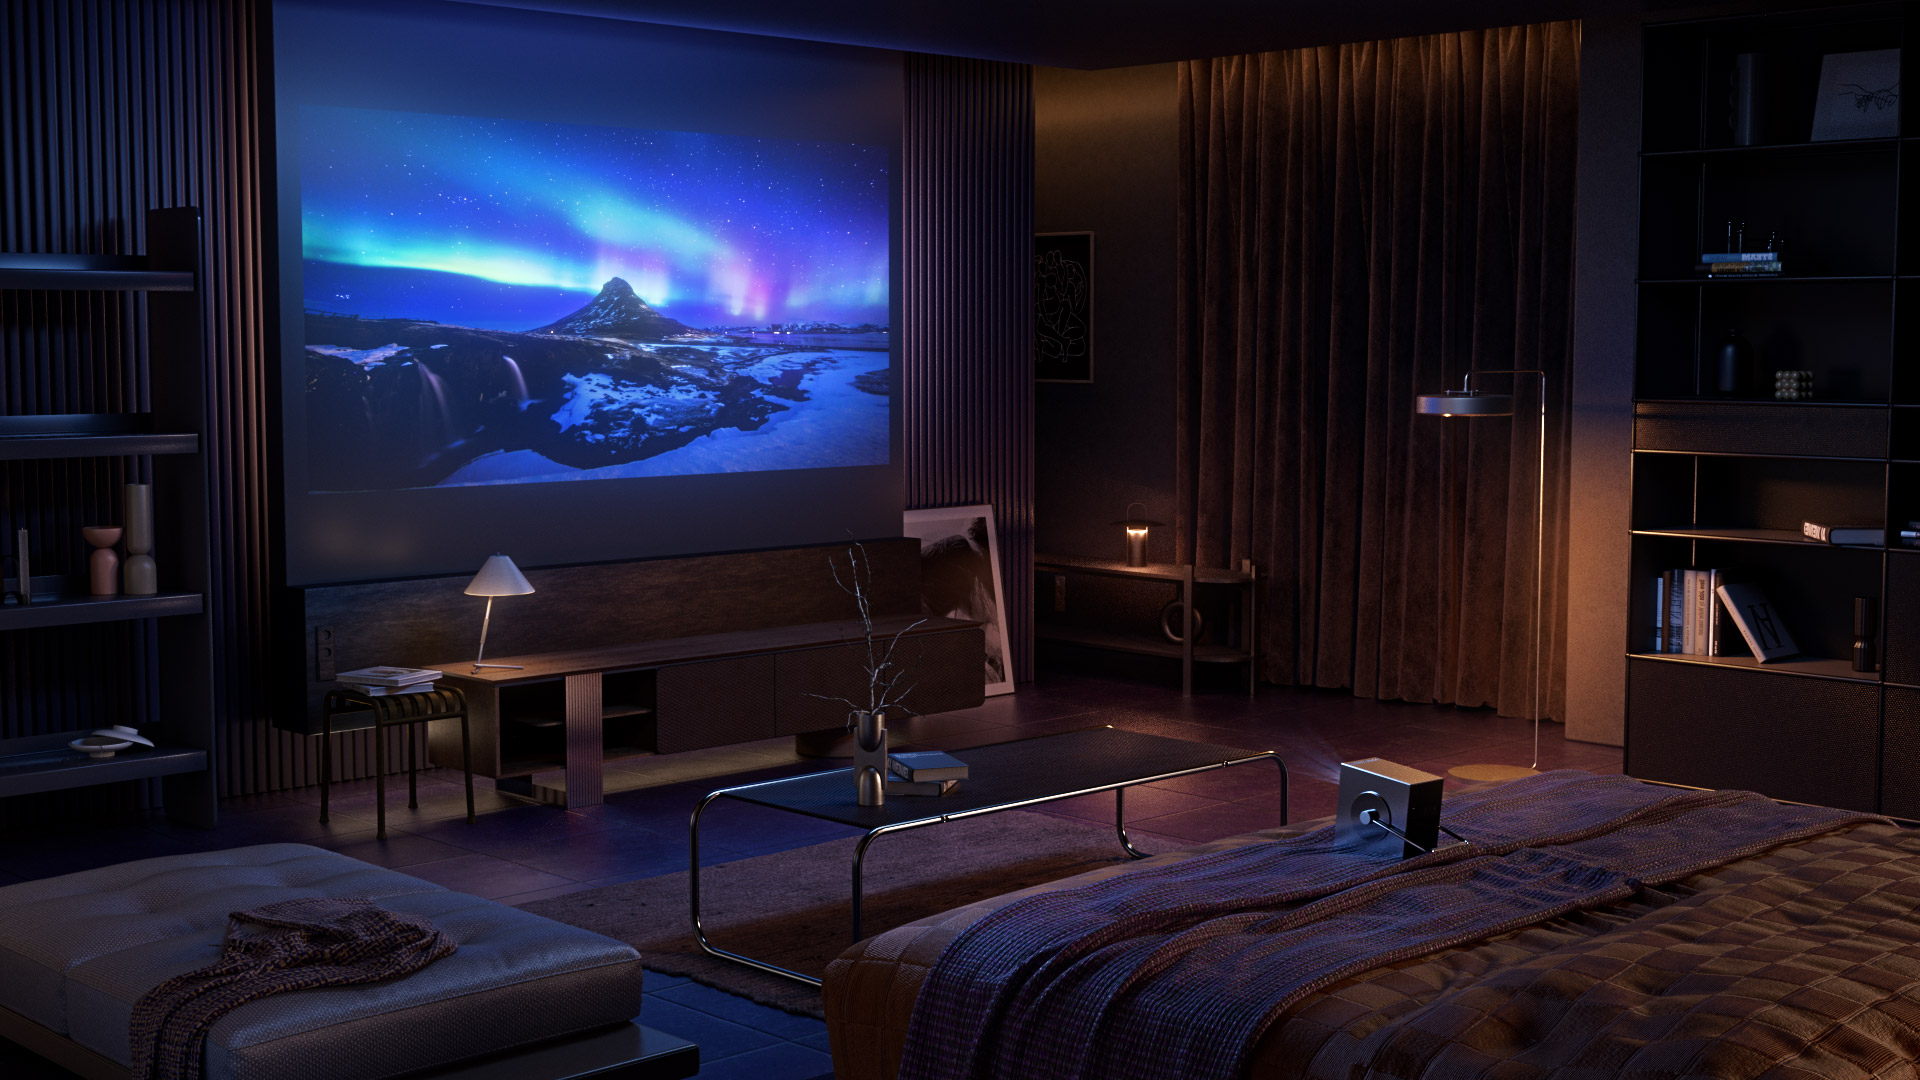 Immagine del Cinebeam Q appoggiato su un letto scuro, che proietta uno schermo blu dell'aurora.